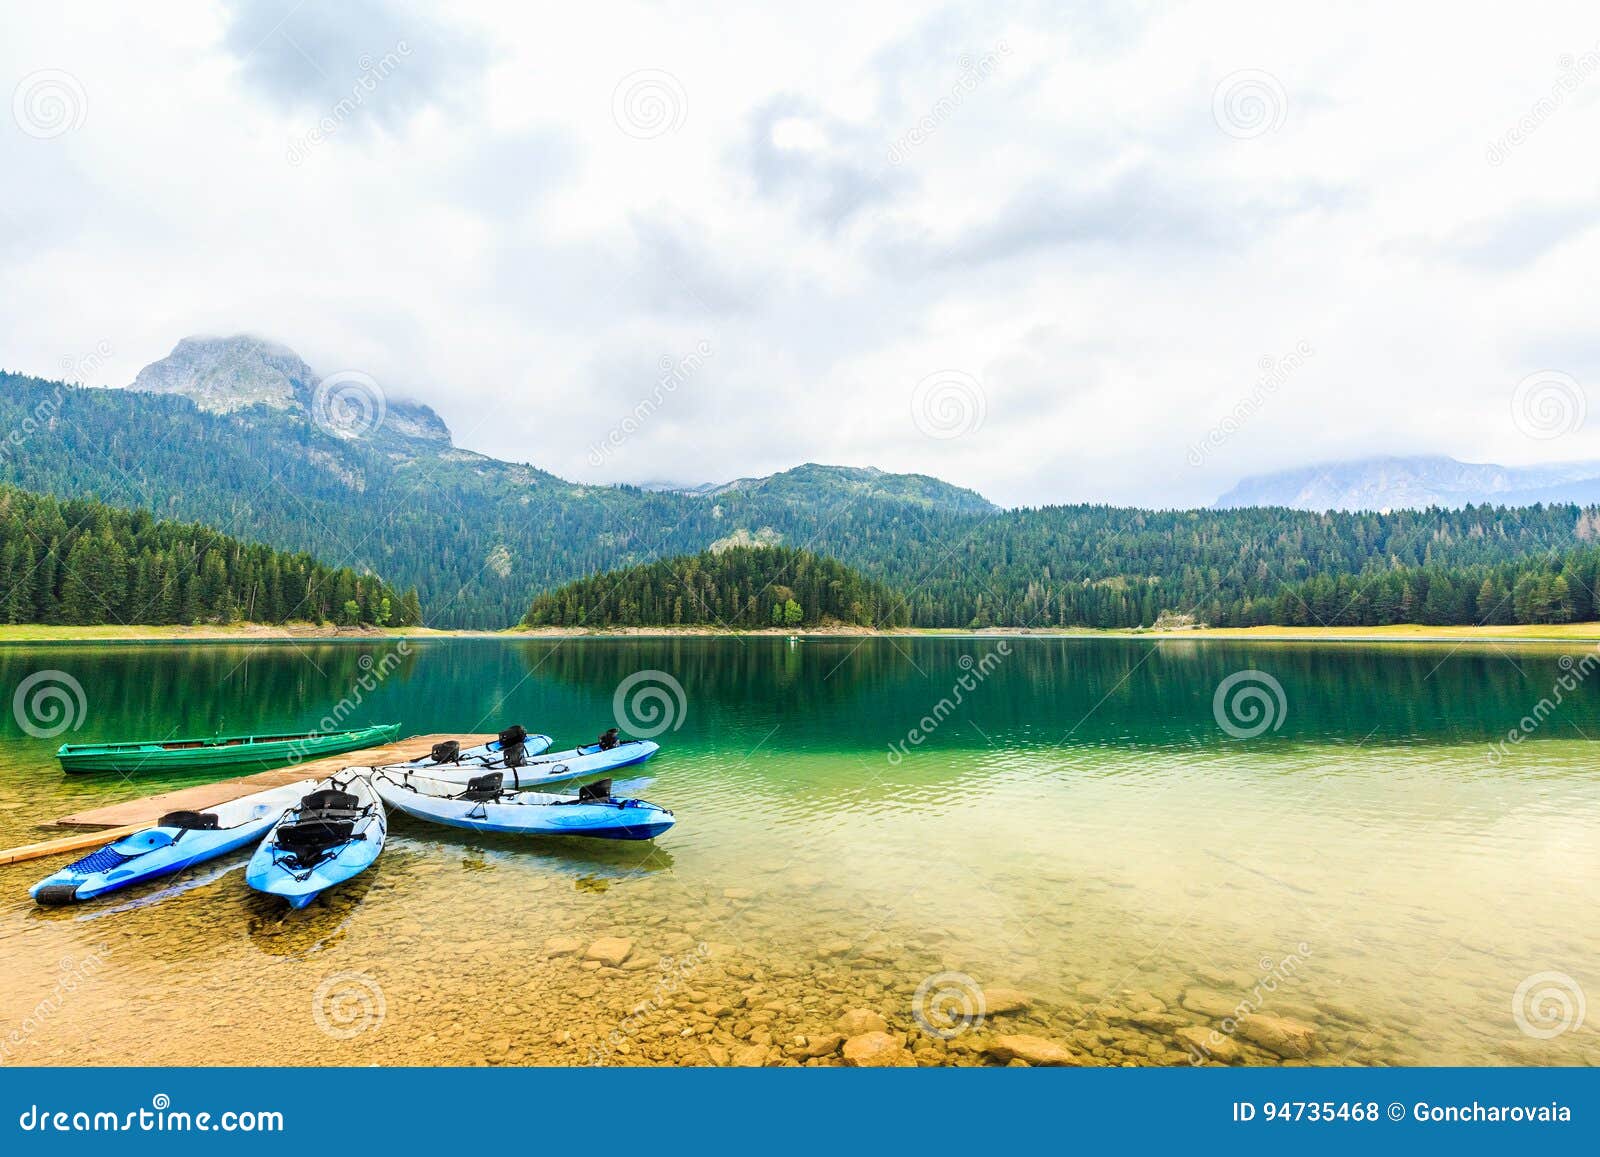 kayaks docked on the shore of black lake, durmitor national park, zabljak, montenegro.